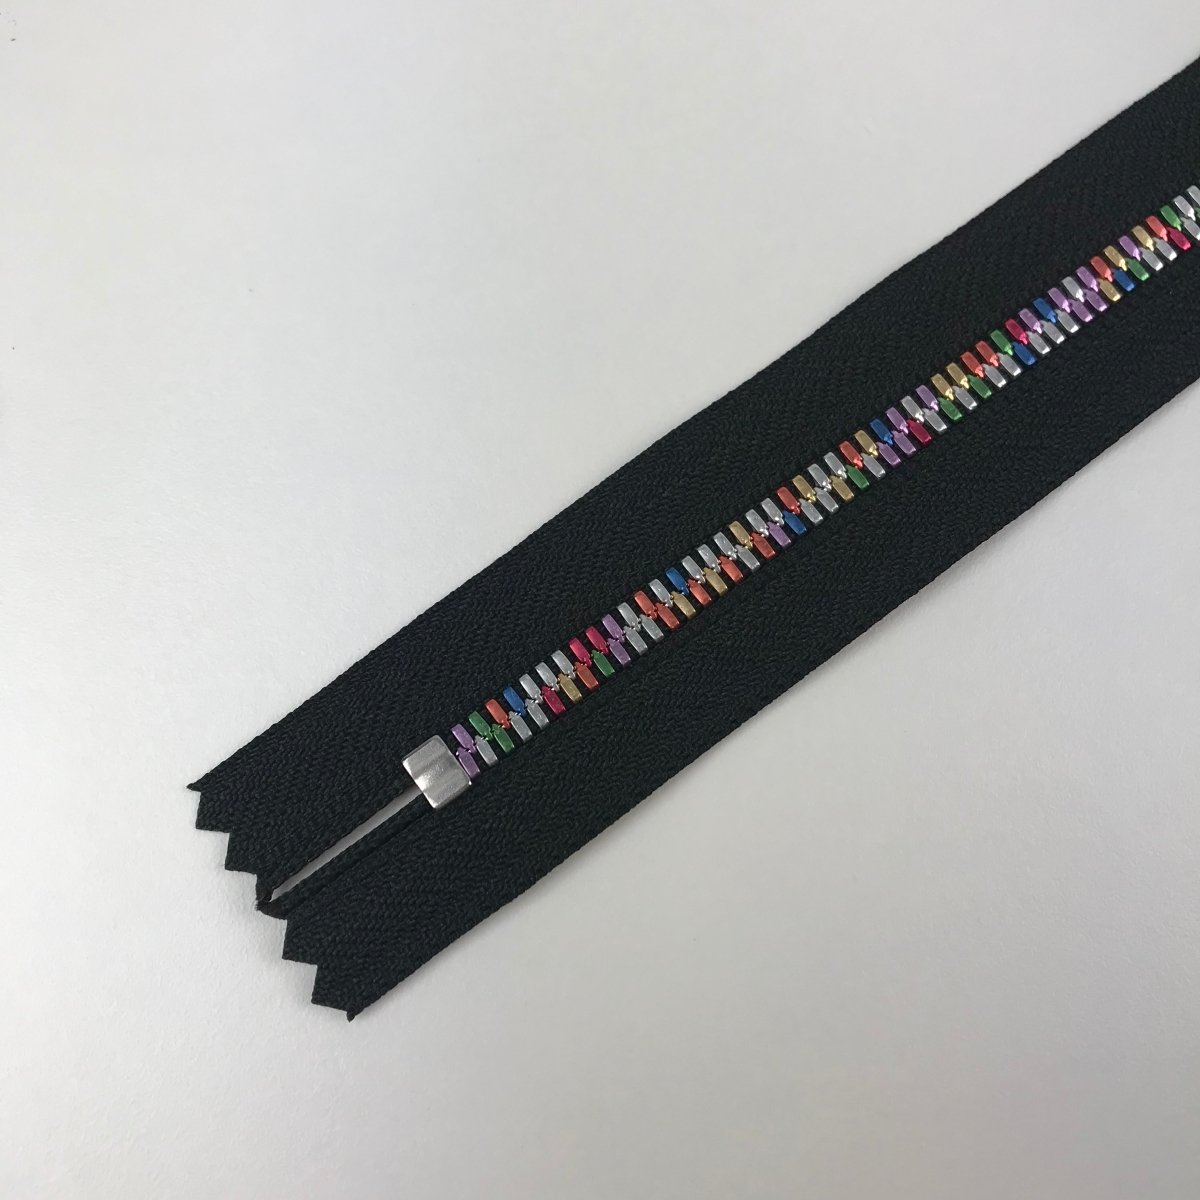 YKK Zipper - Exposed Metal Teeth - Rainbow - 56cm (22") - Sewing Gem